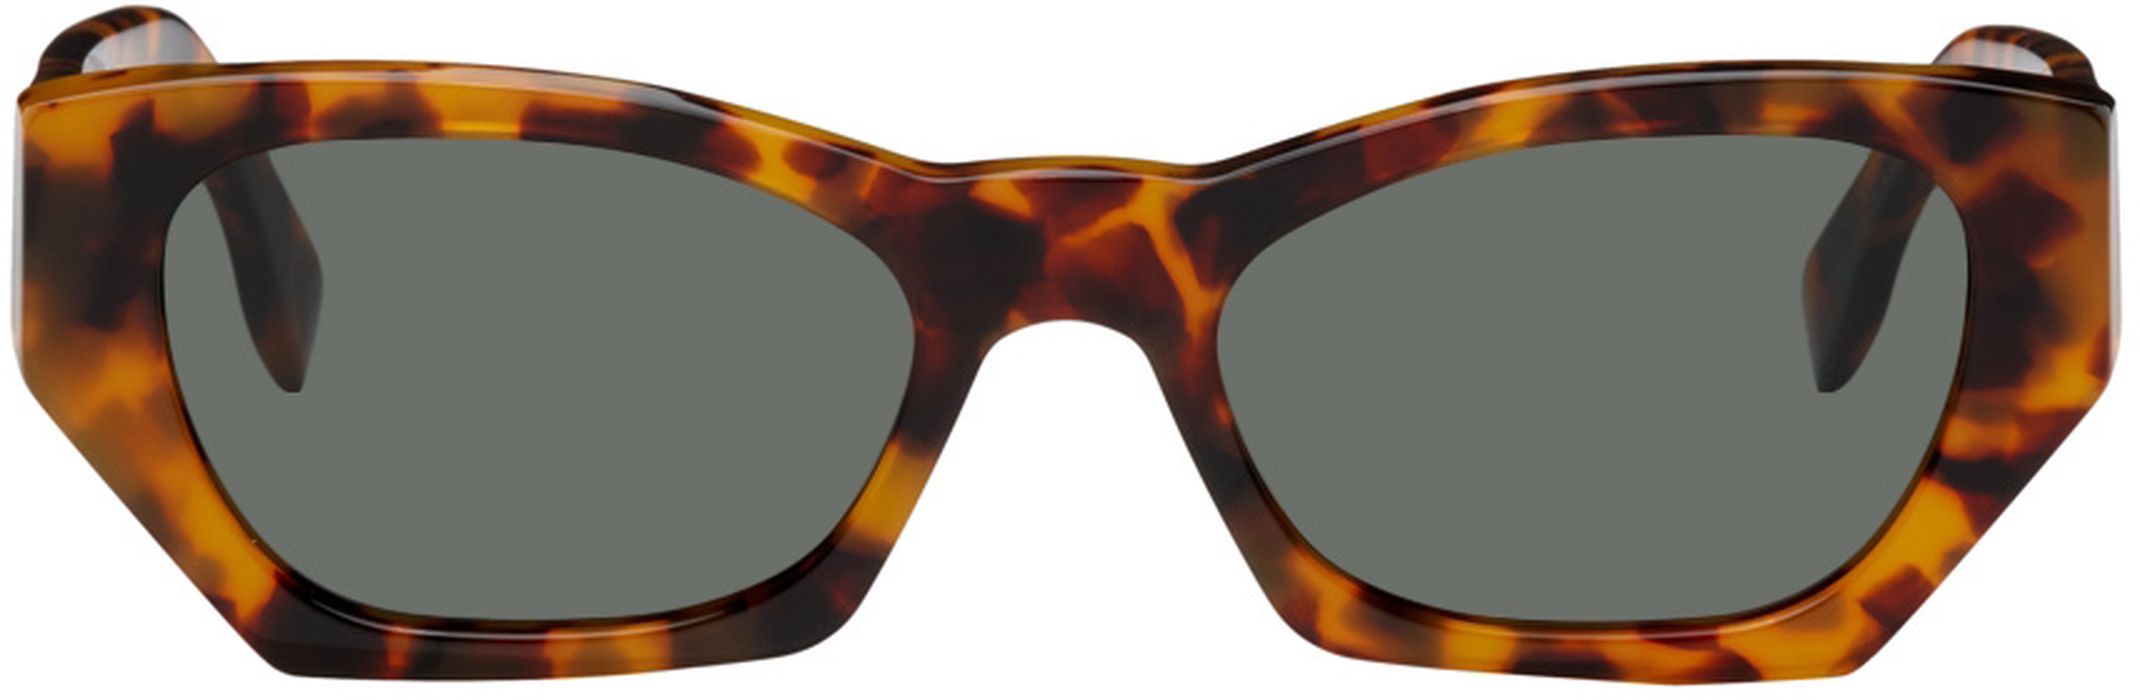 RETROSUPERFUTURE Tortoiseshell Amata Sunglasses